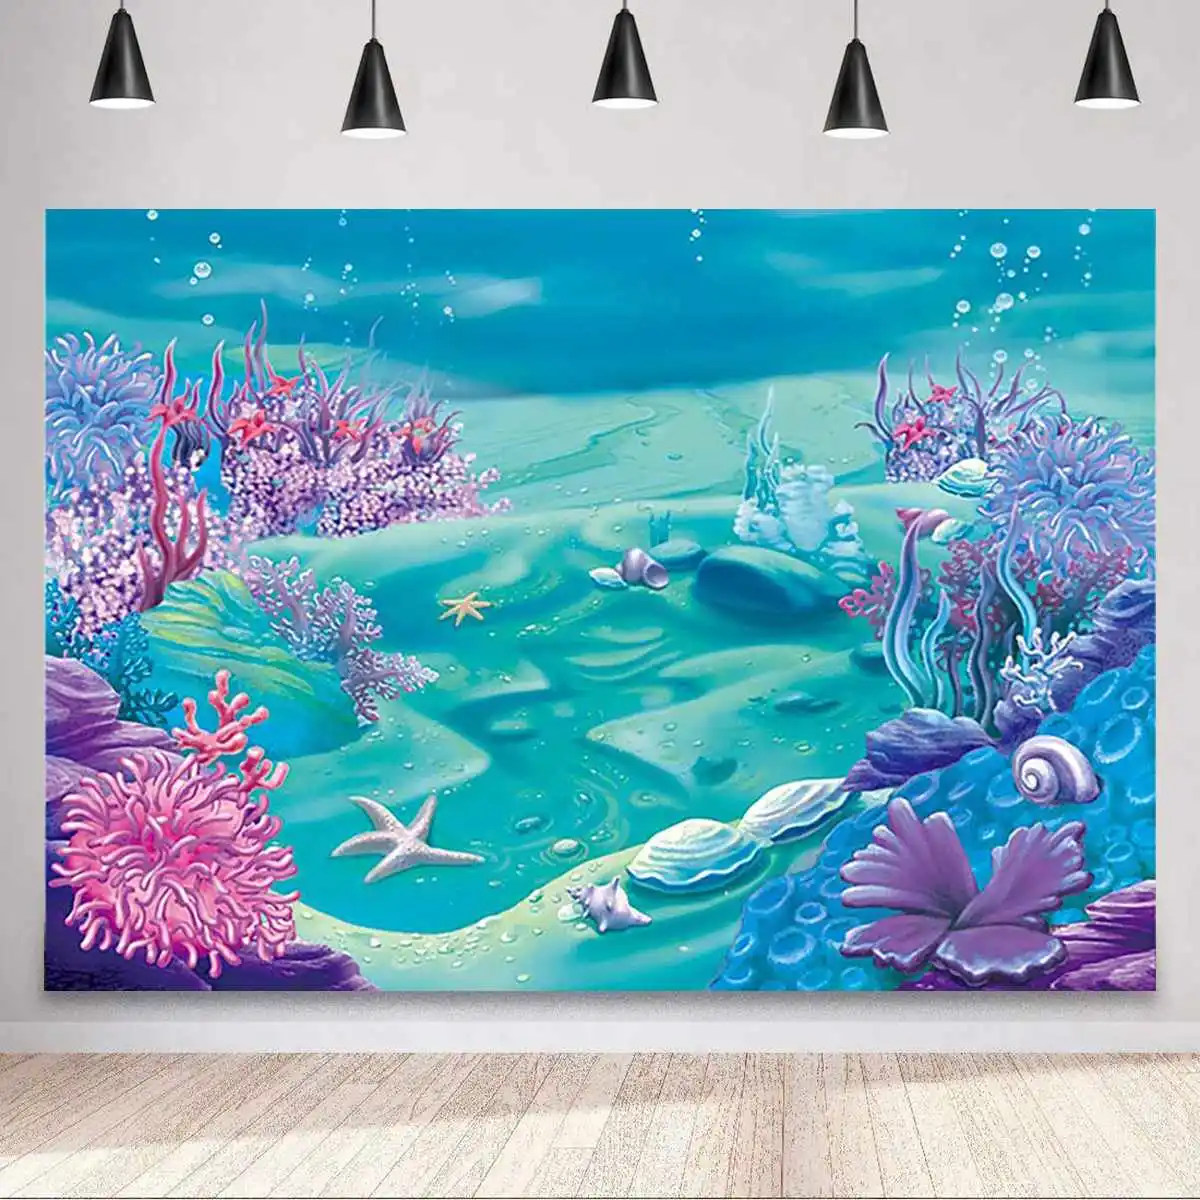 

Фон для фотосъемки на день рождения с изображением морского кораллового замка пузырьков русалки для детской вечеринки фоны для фотосъемки ...